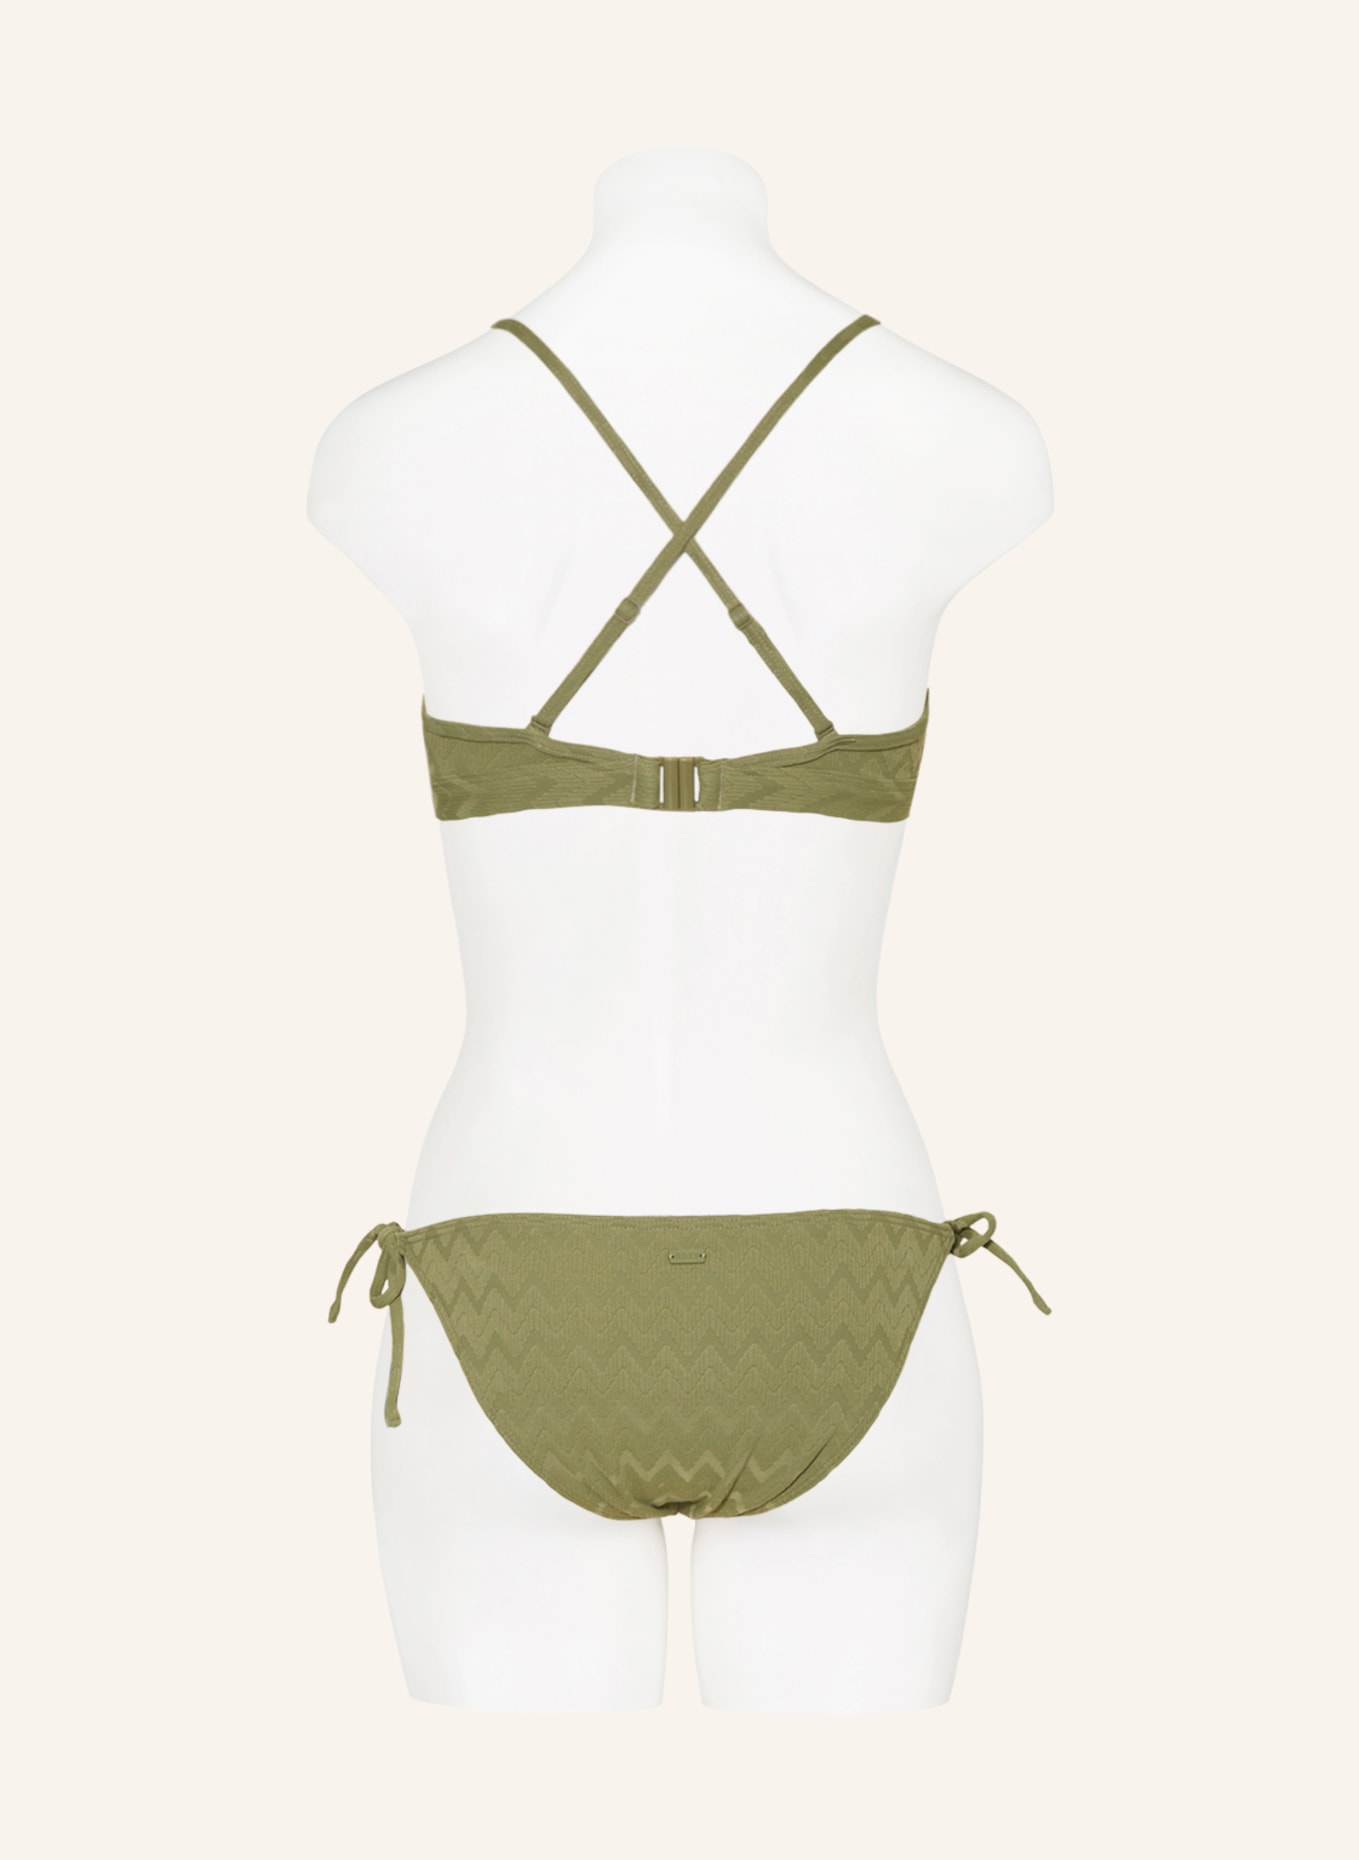 ROXY Bralette-Bikini-Top CURRENT COOLNESS, Farbe: OLIV (Bild 4)